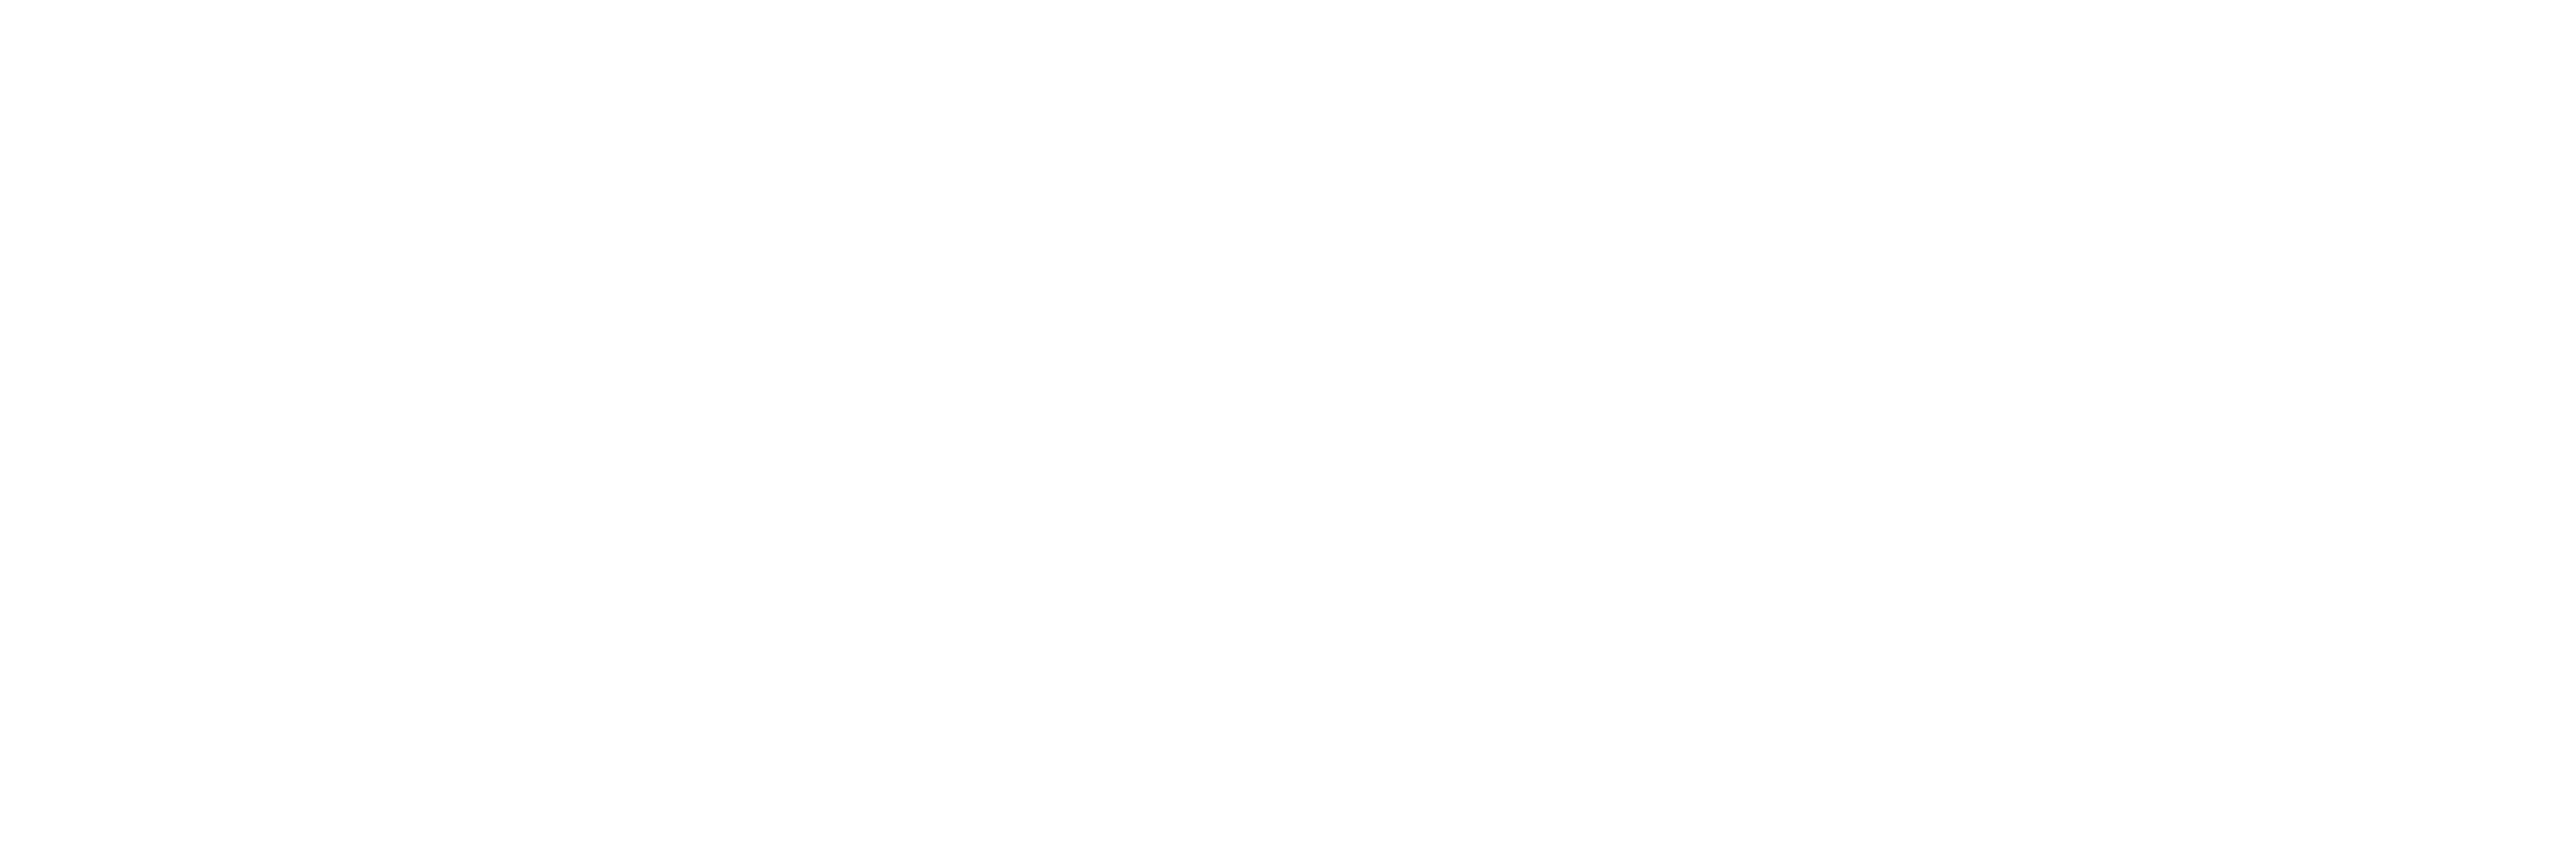 podvertise advertising in white